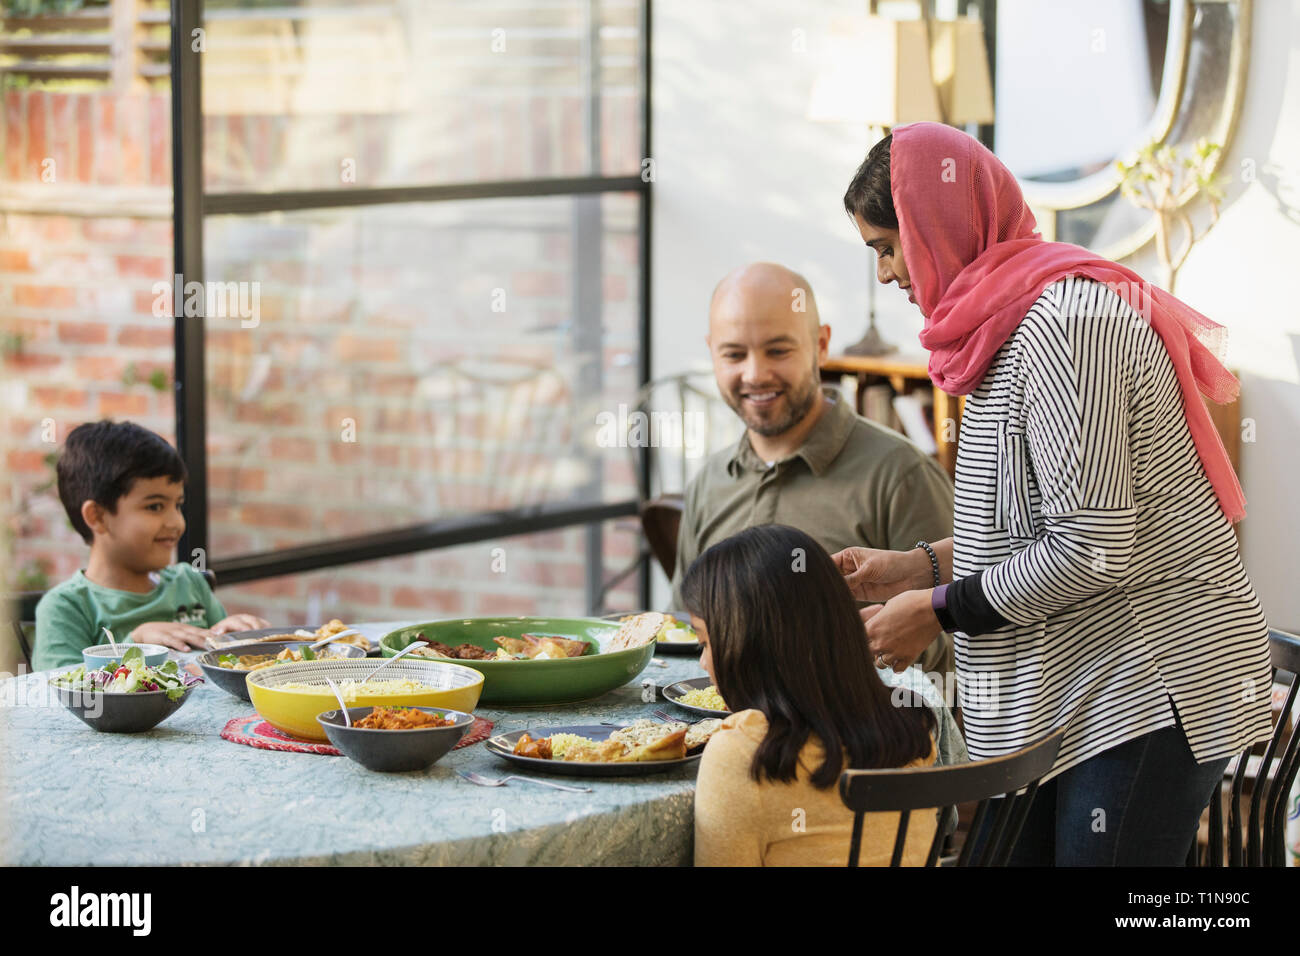 Madre in hijab serve la cena di famiglia al tavolo da pranzo Foto Stock